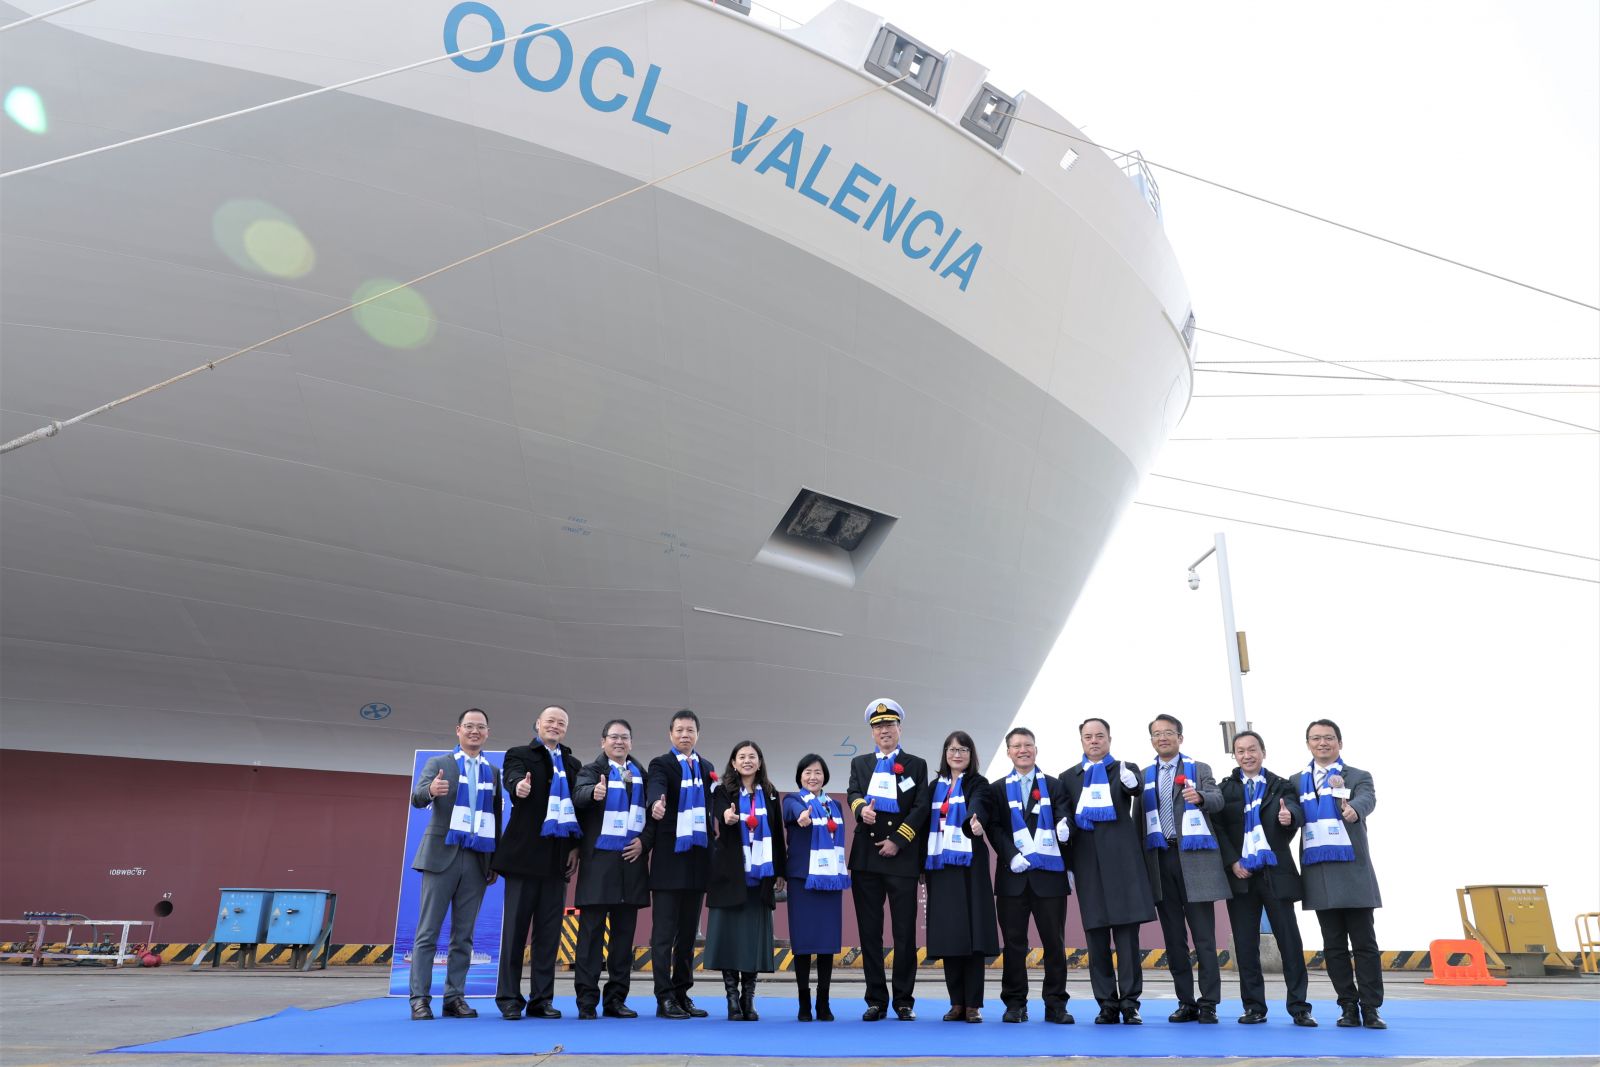 OOCL Valencia container ship